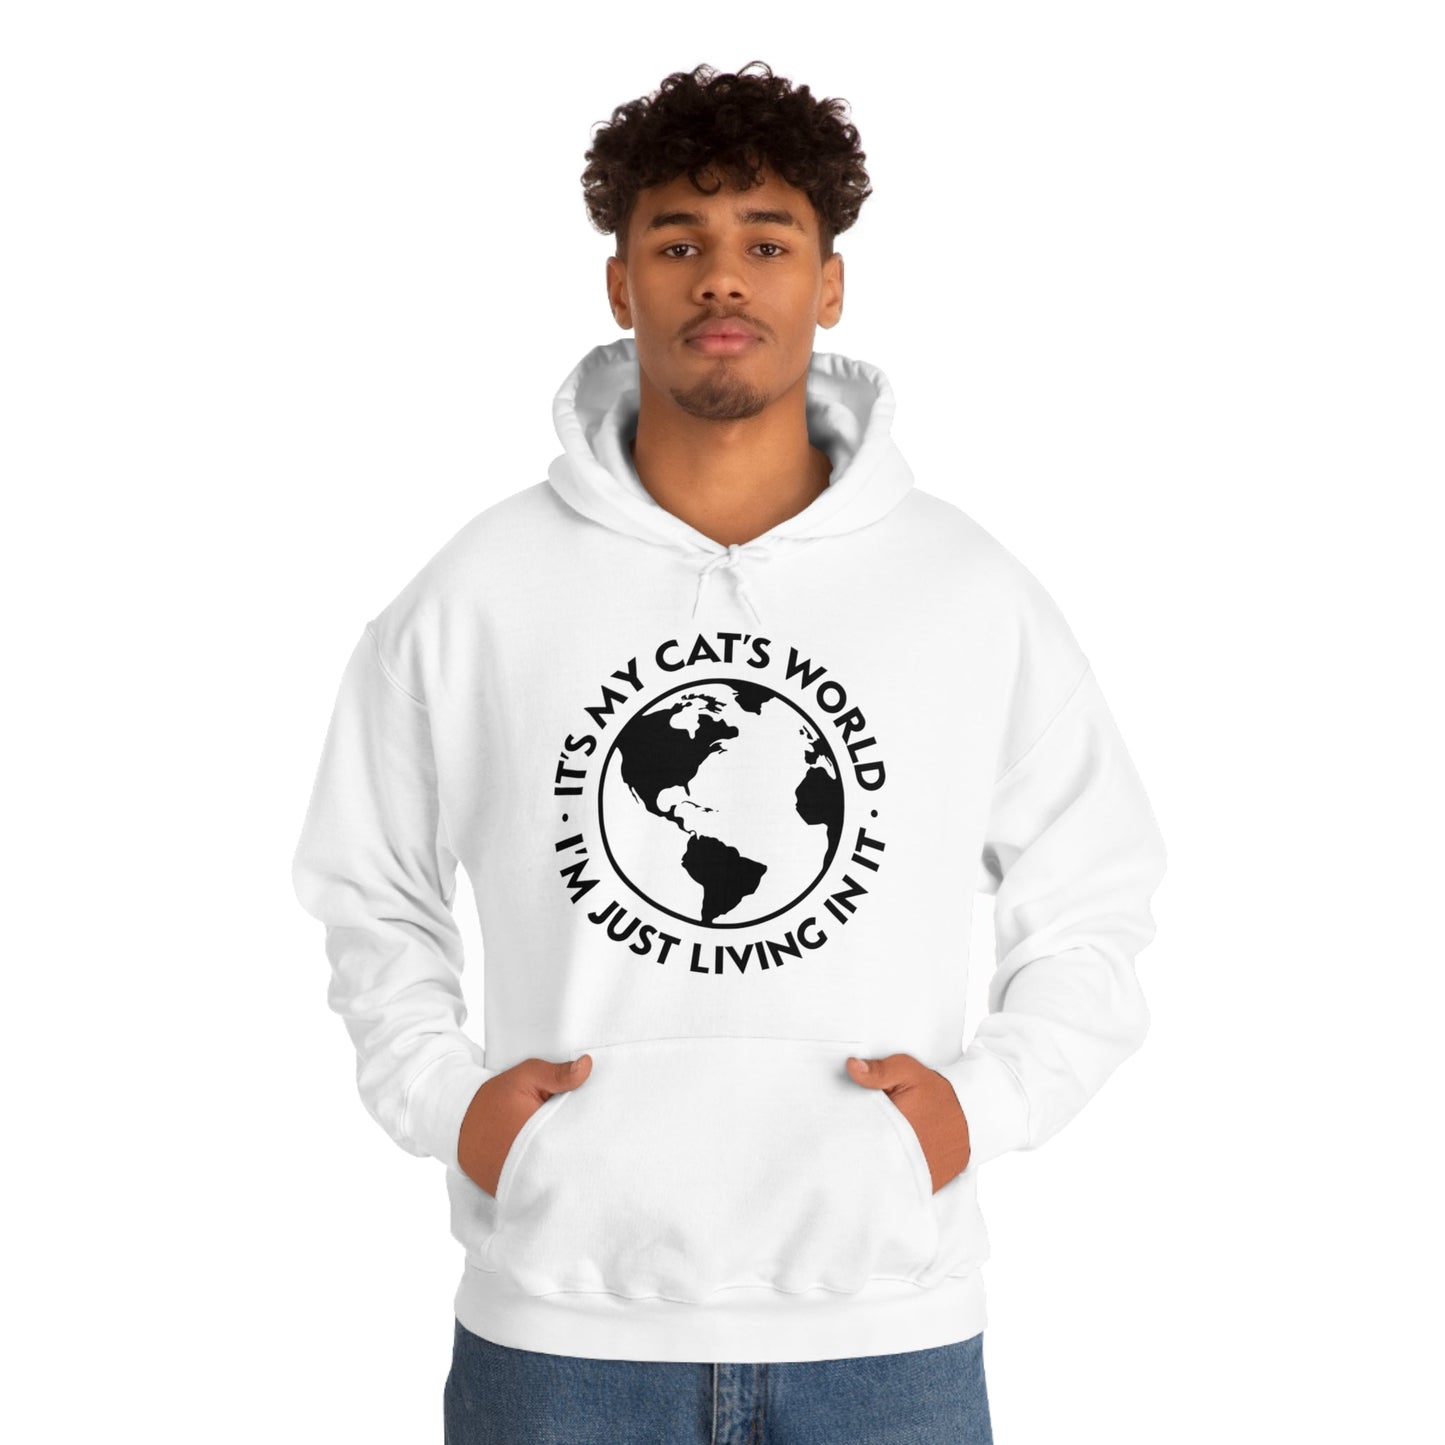 It's My Cat's World | Hooded Sweatshirt - Detezi Designs-15455556528266739276